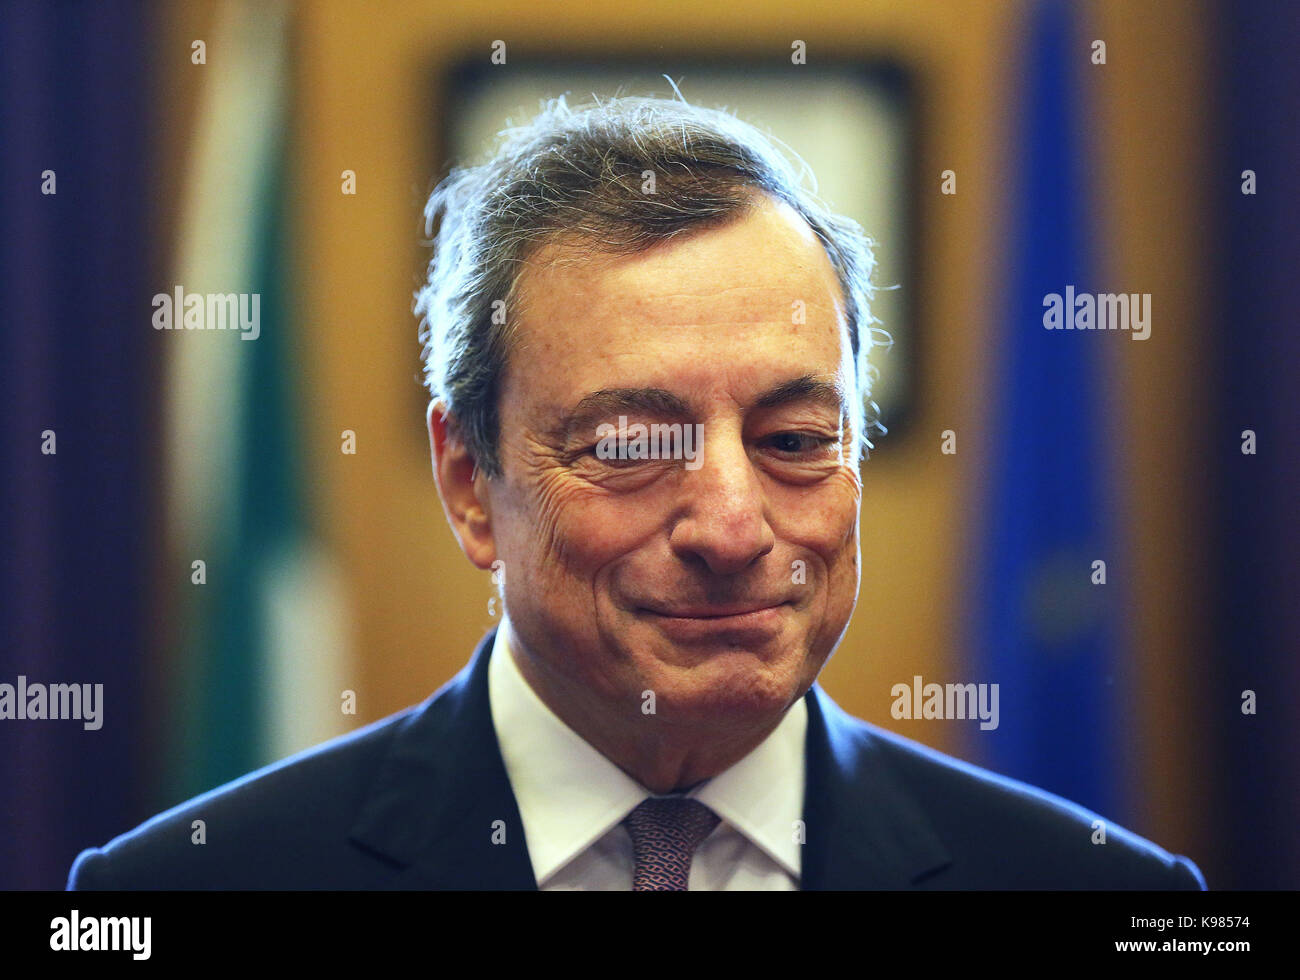 Le président de la Banque centrale européenne Mario Draghi à des édifices gouvernementaux à dublin pour une réunion avec un taoiseach leo varadkar. Banque D'Images